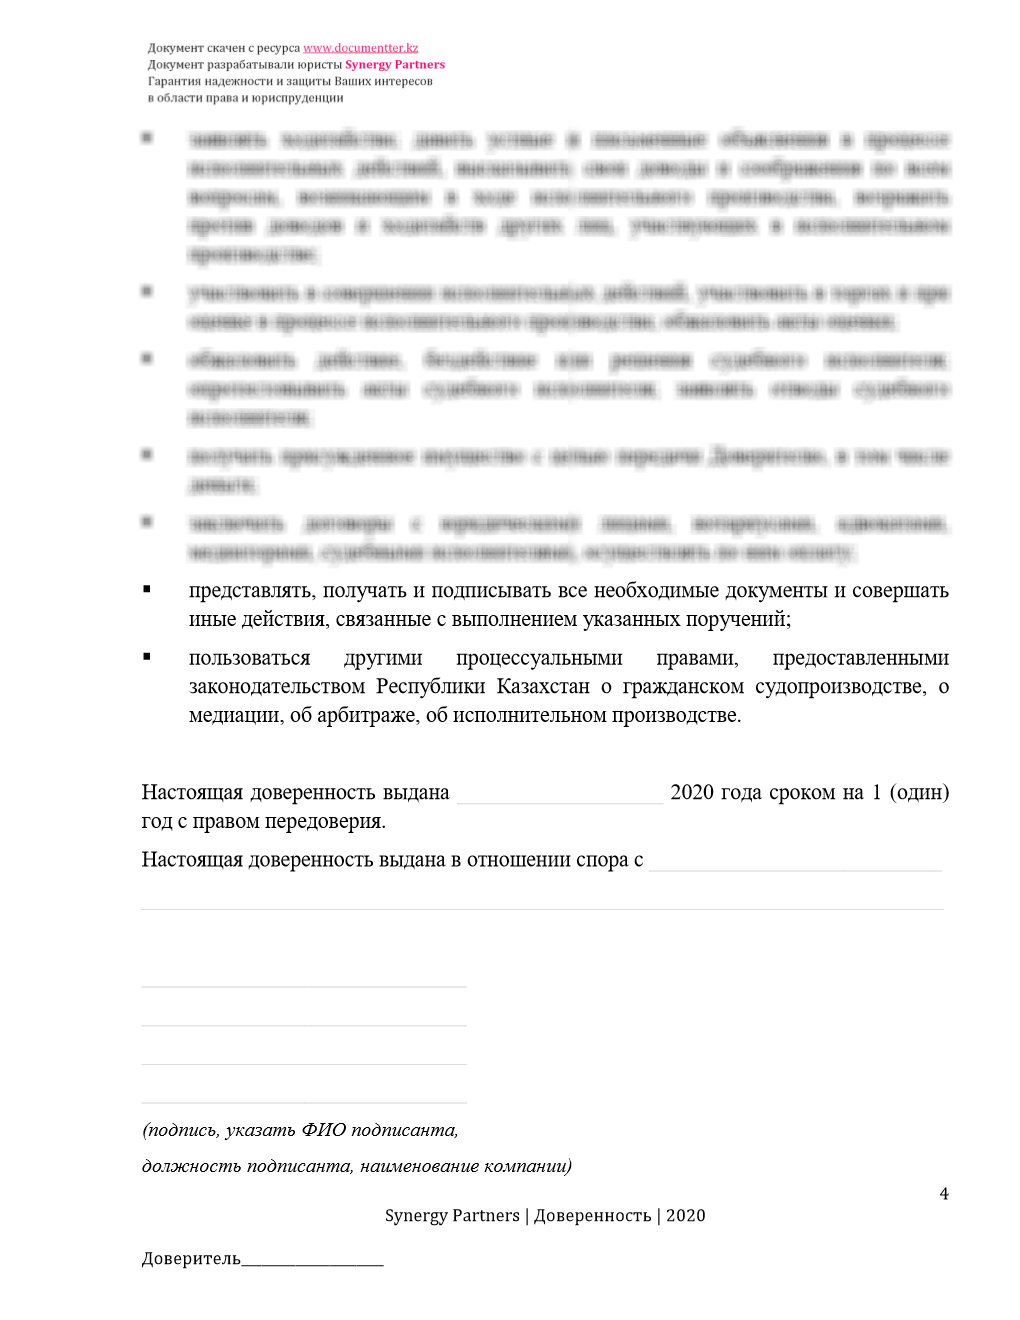 Доверенность для всех стадии разбирательства (полная) | documentterkz.com в Казахстане